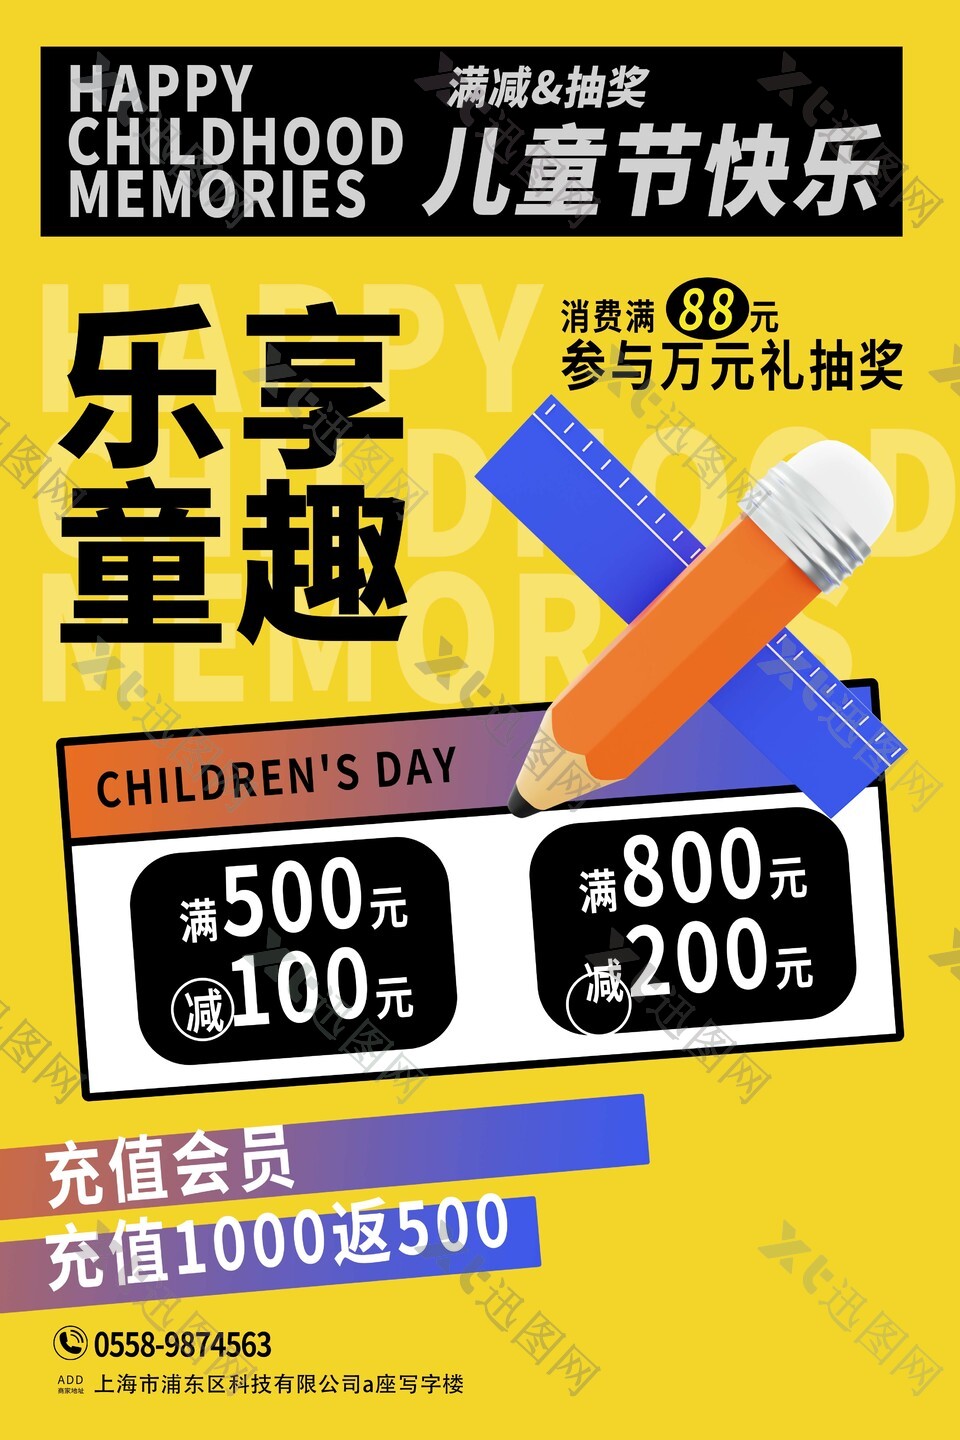 乐享童趣儿童节快乐活动海报模板下载